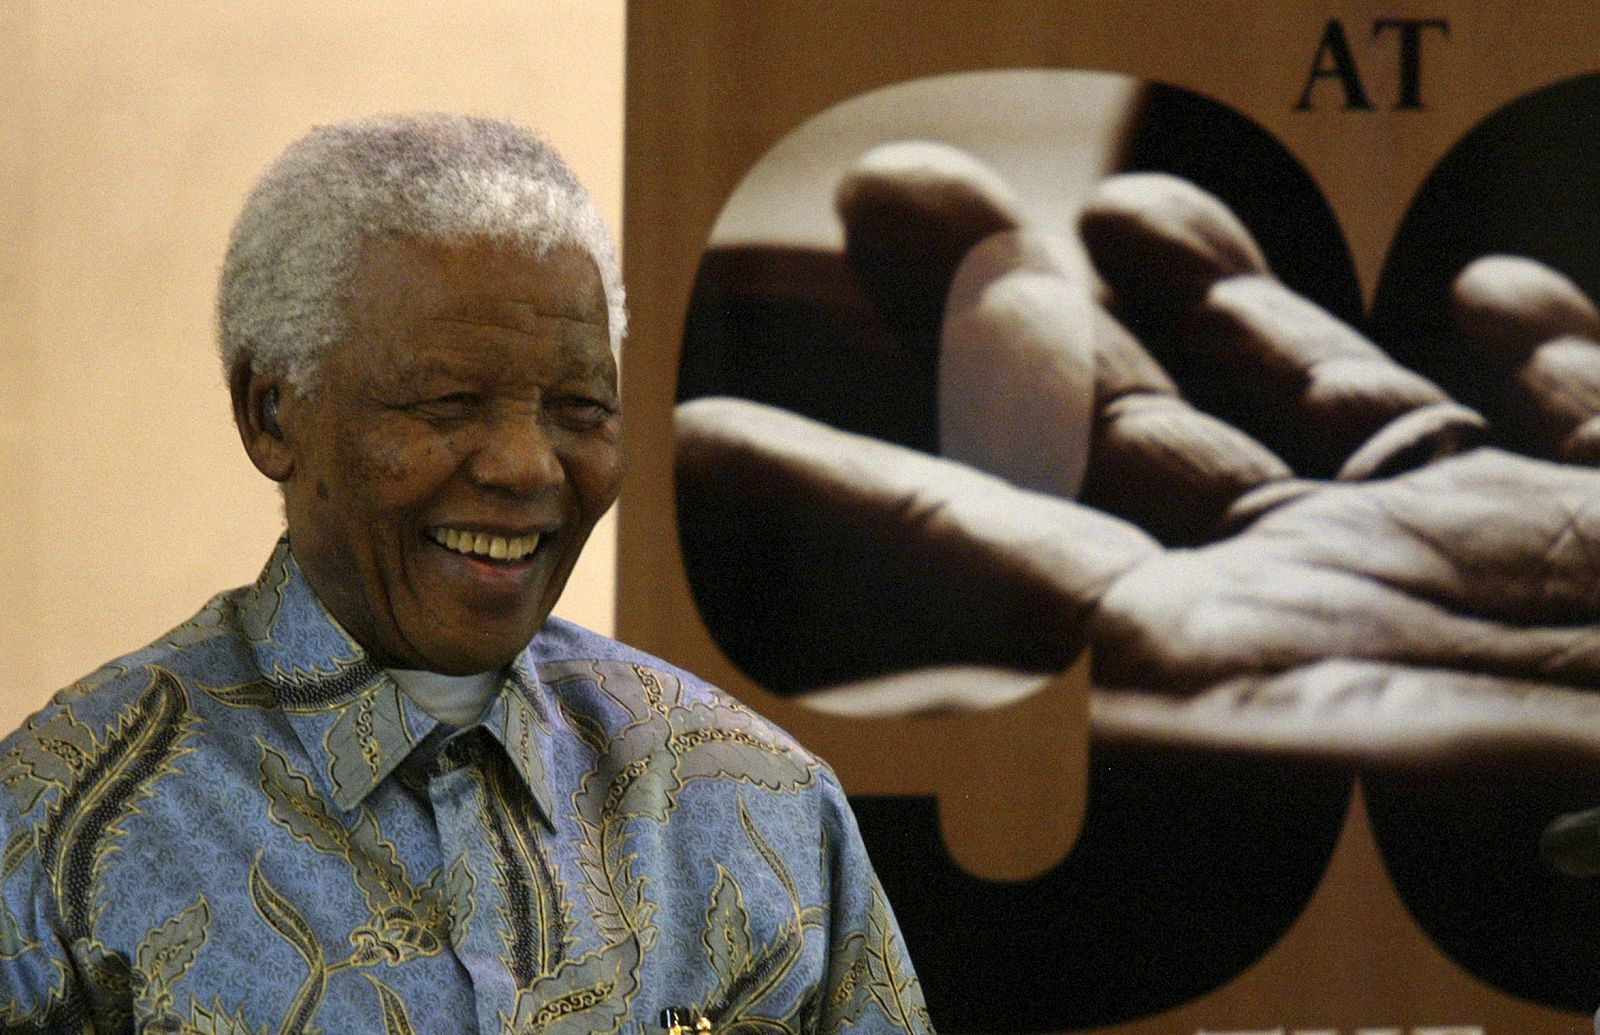 El ex presidente sudafricano, Nelson Mandela, cumplirá el próximo 18 de julio 90 años